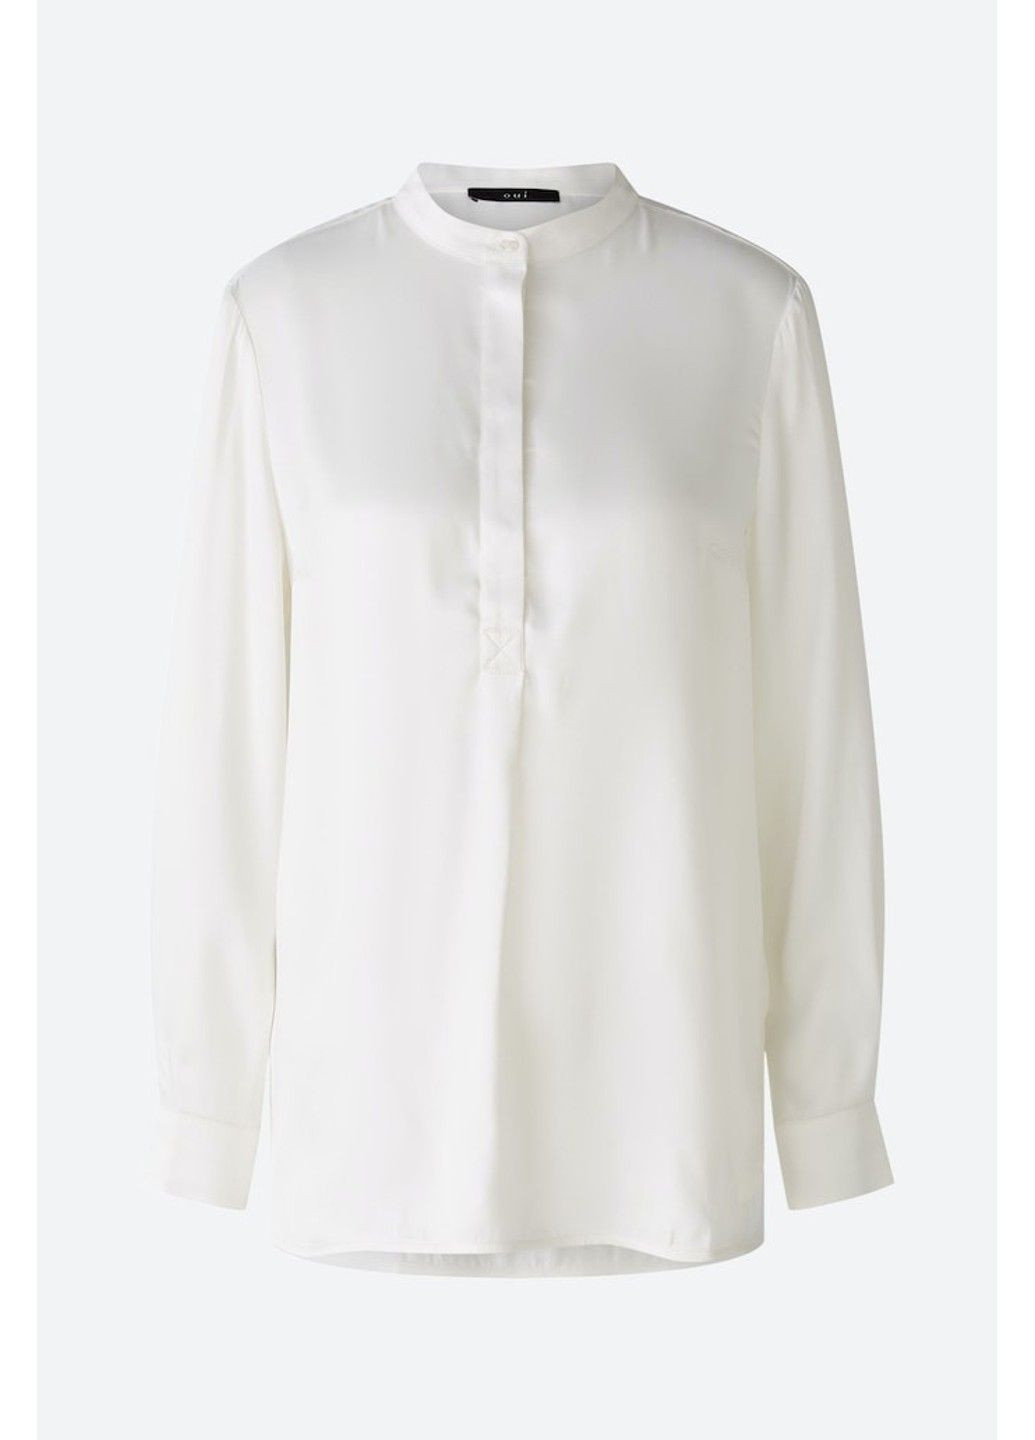 Белая демисезонная женская рубашка 79592 2638 белый 46 Oui